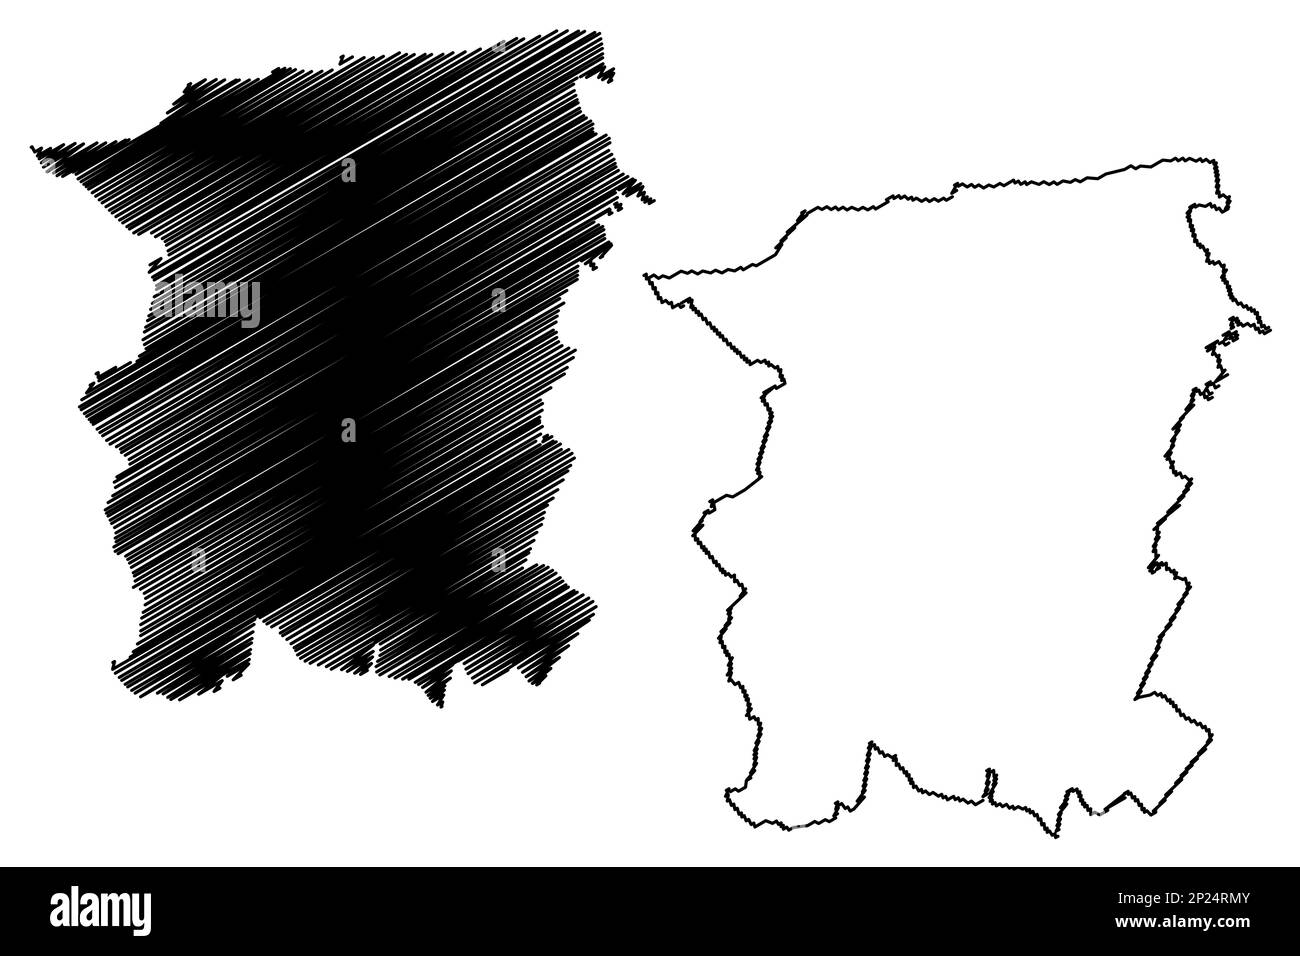 Canterbury zone non métropolitaine, quartier, ville (Royaume-Uni de Grande-Bretagne et d'Irlande du Nord, comté cérémonial de Kent, Angleterre) vecteur de carte Illustration de Vecteur